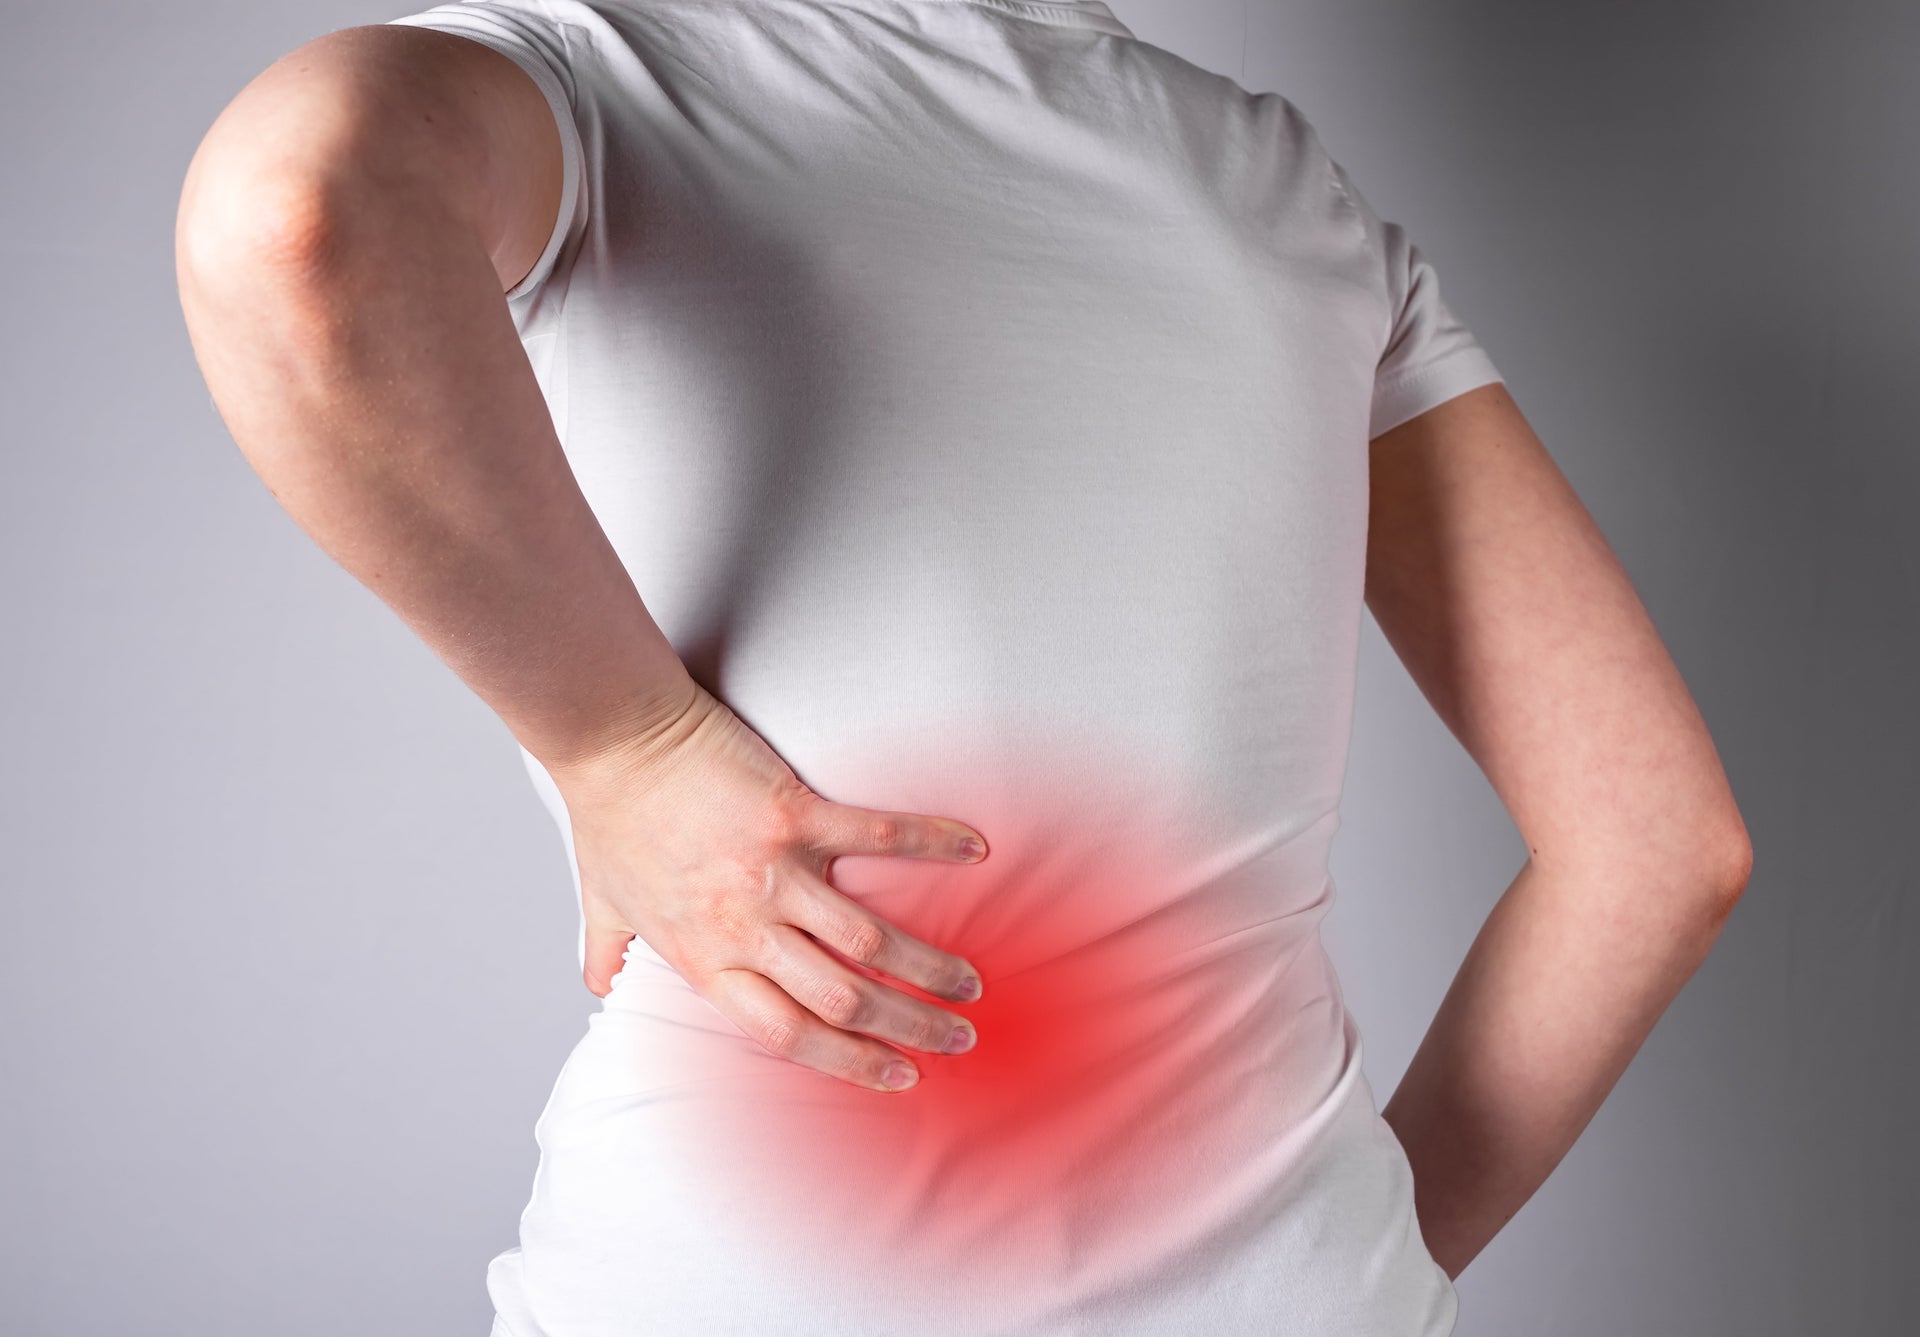 Eine Person im weißen Hemd hält sich vor grauem Hintergrund den unteren Rücken, der durch einen roten Schimmer hervorgehoben ist, der auf chronische Rückenschmerzen im Lendenbereich hinweist.